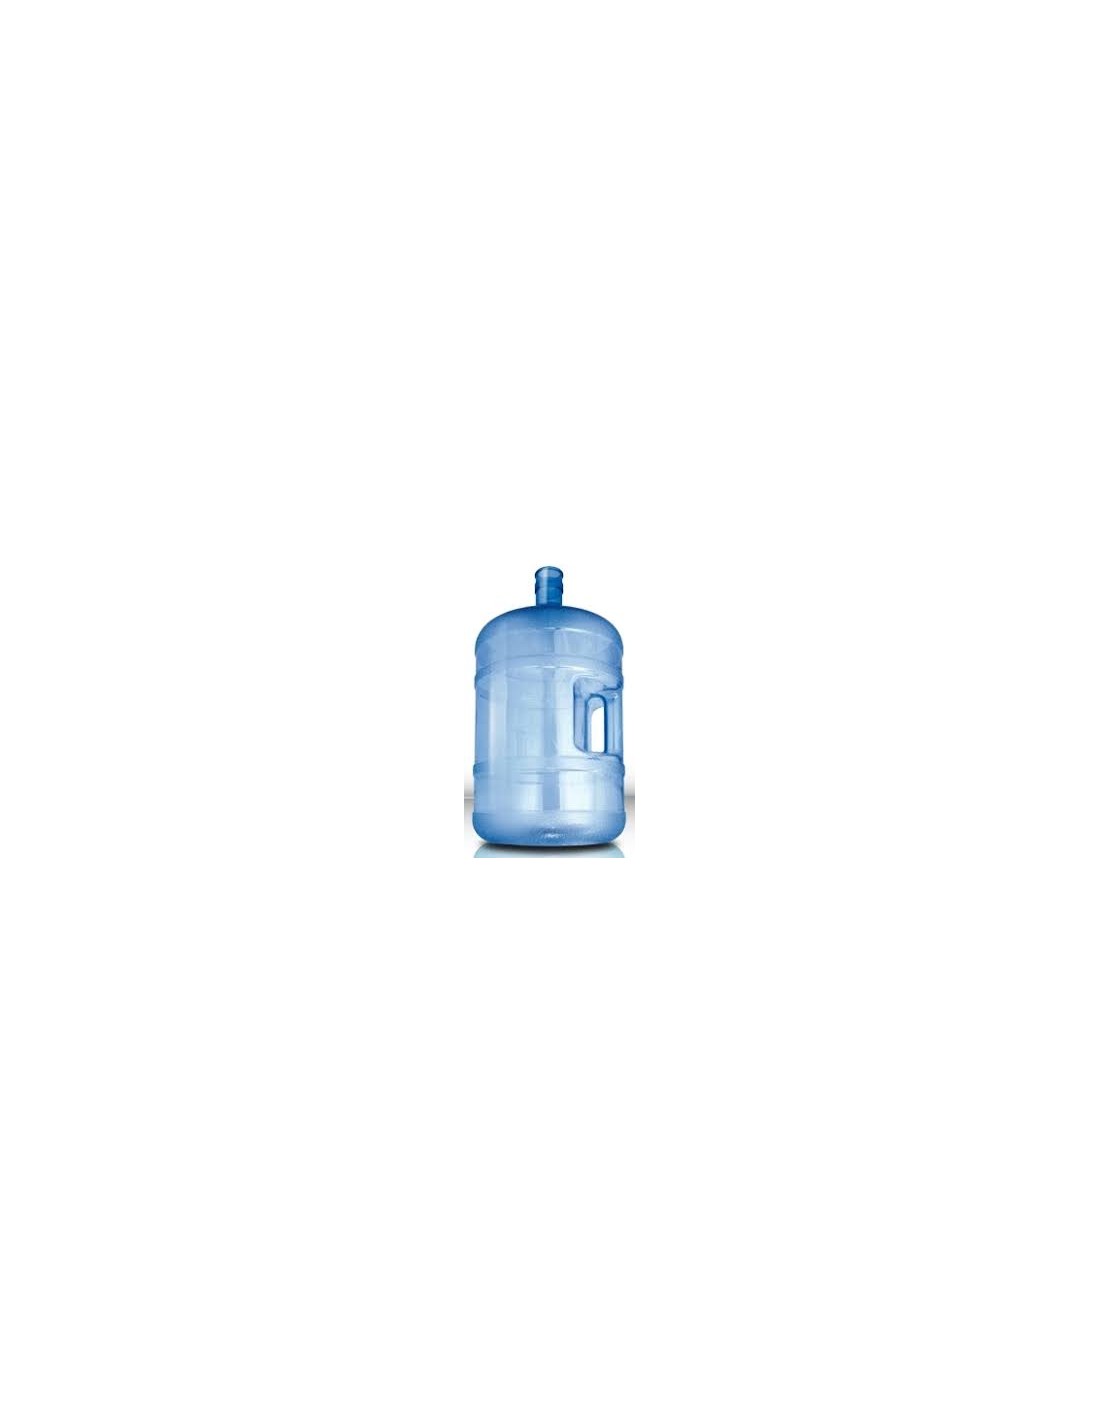 Bidón policarbonato 20 litros con manija – Industrias Wasserkraft